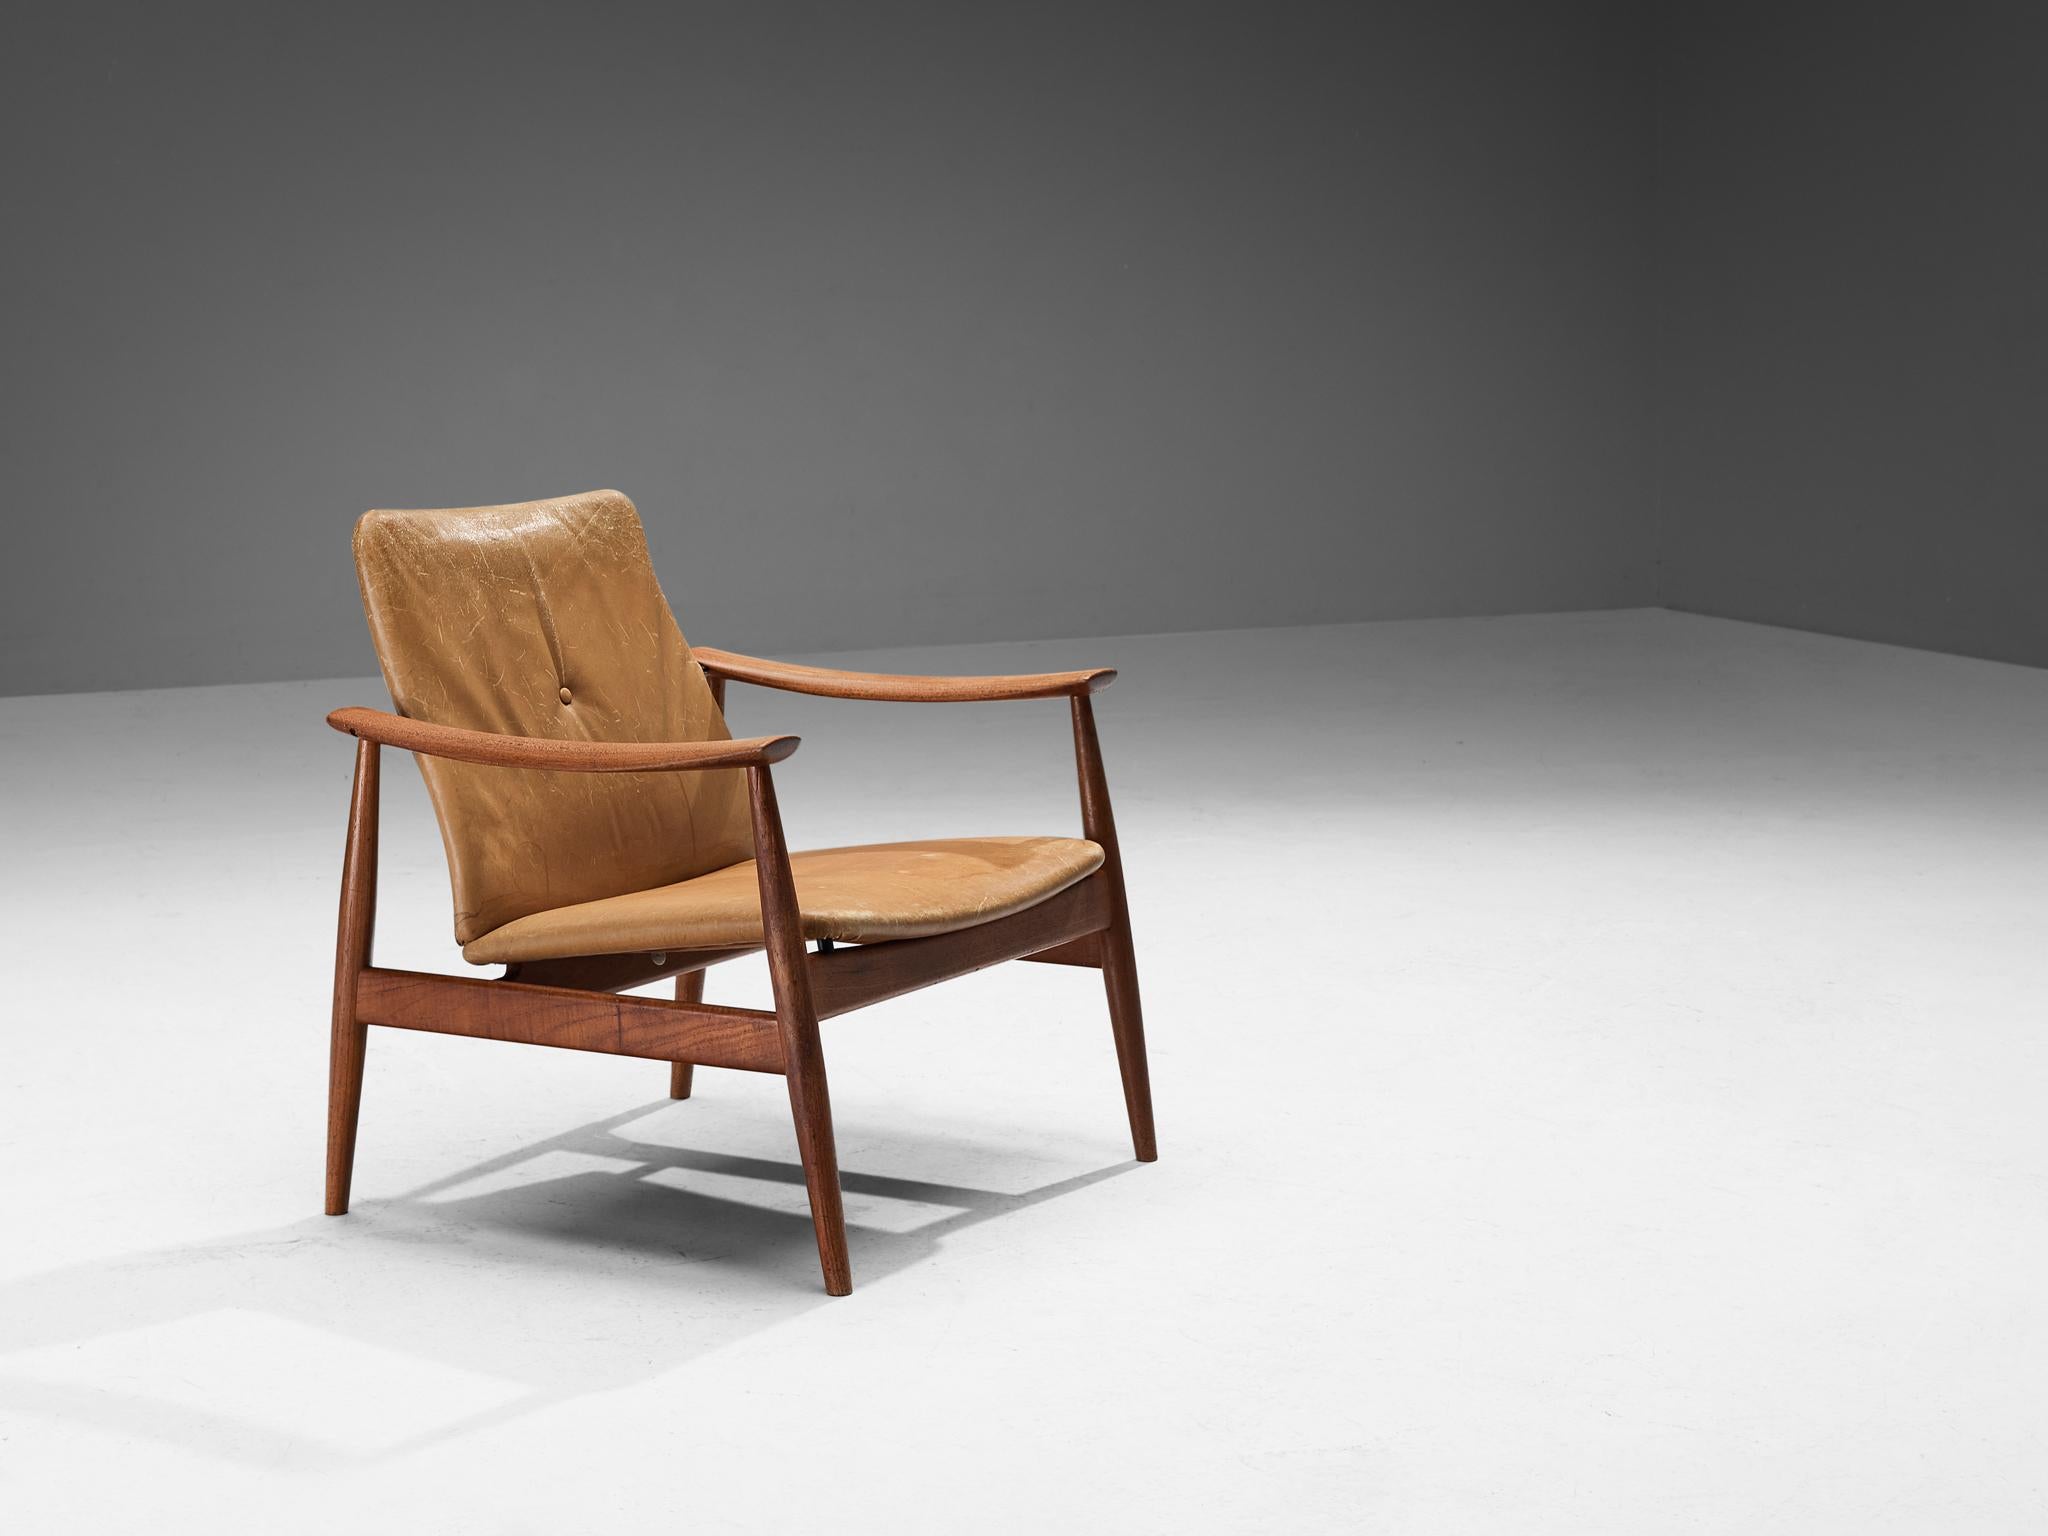 Finn Juhl für France & Søn, Nr. 138 Loungesessel, Teak, Leder, Dänemark, Entwurf ca. 1959

Dieser Sessel wurde 1959 vom dänischen Meisterdesigner Finn Juhl entworfen. Der schlanke, organische Rahmen aus schönem Teakholz mit seinen konisch